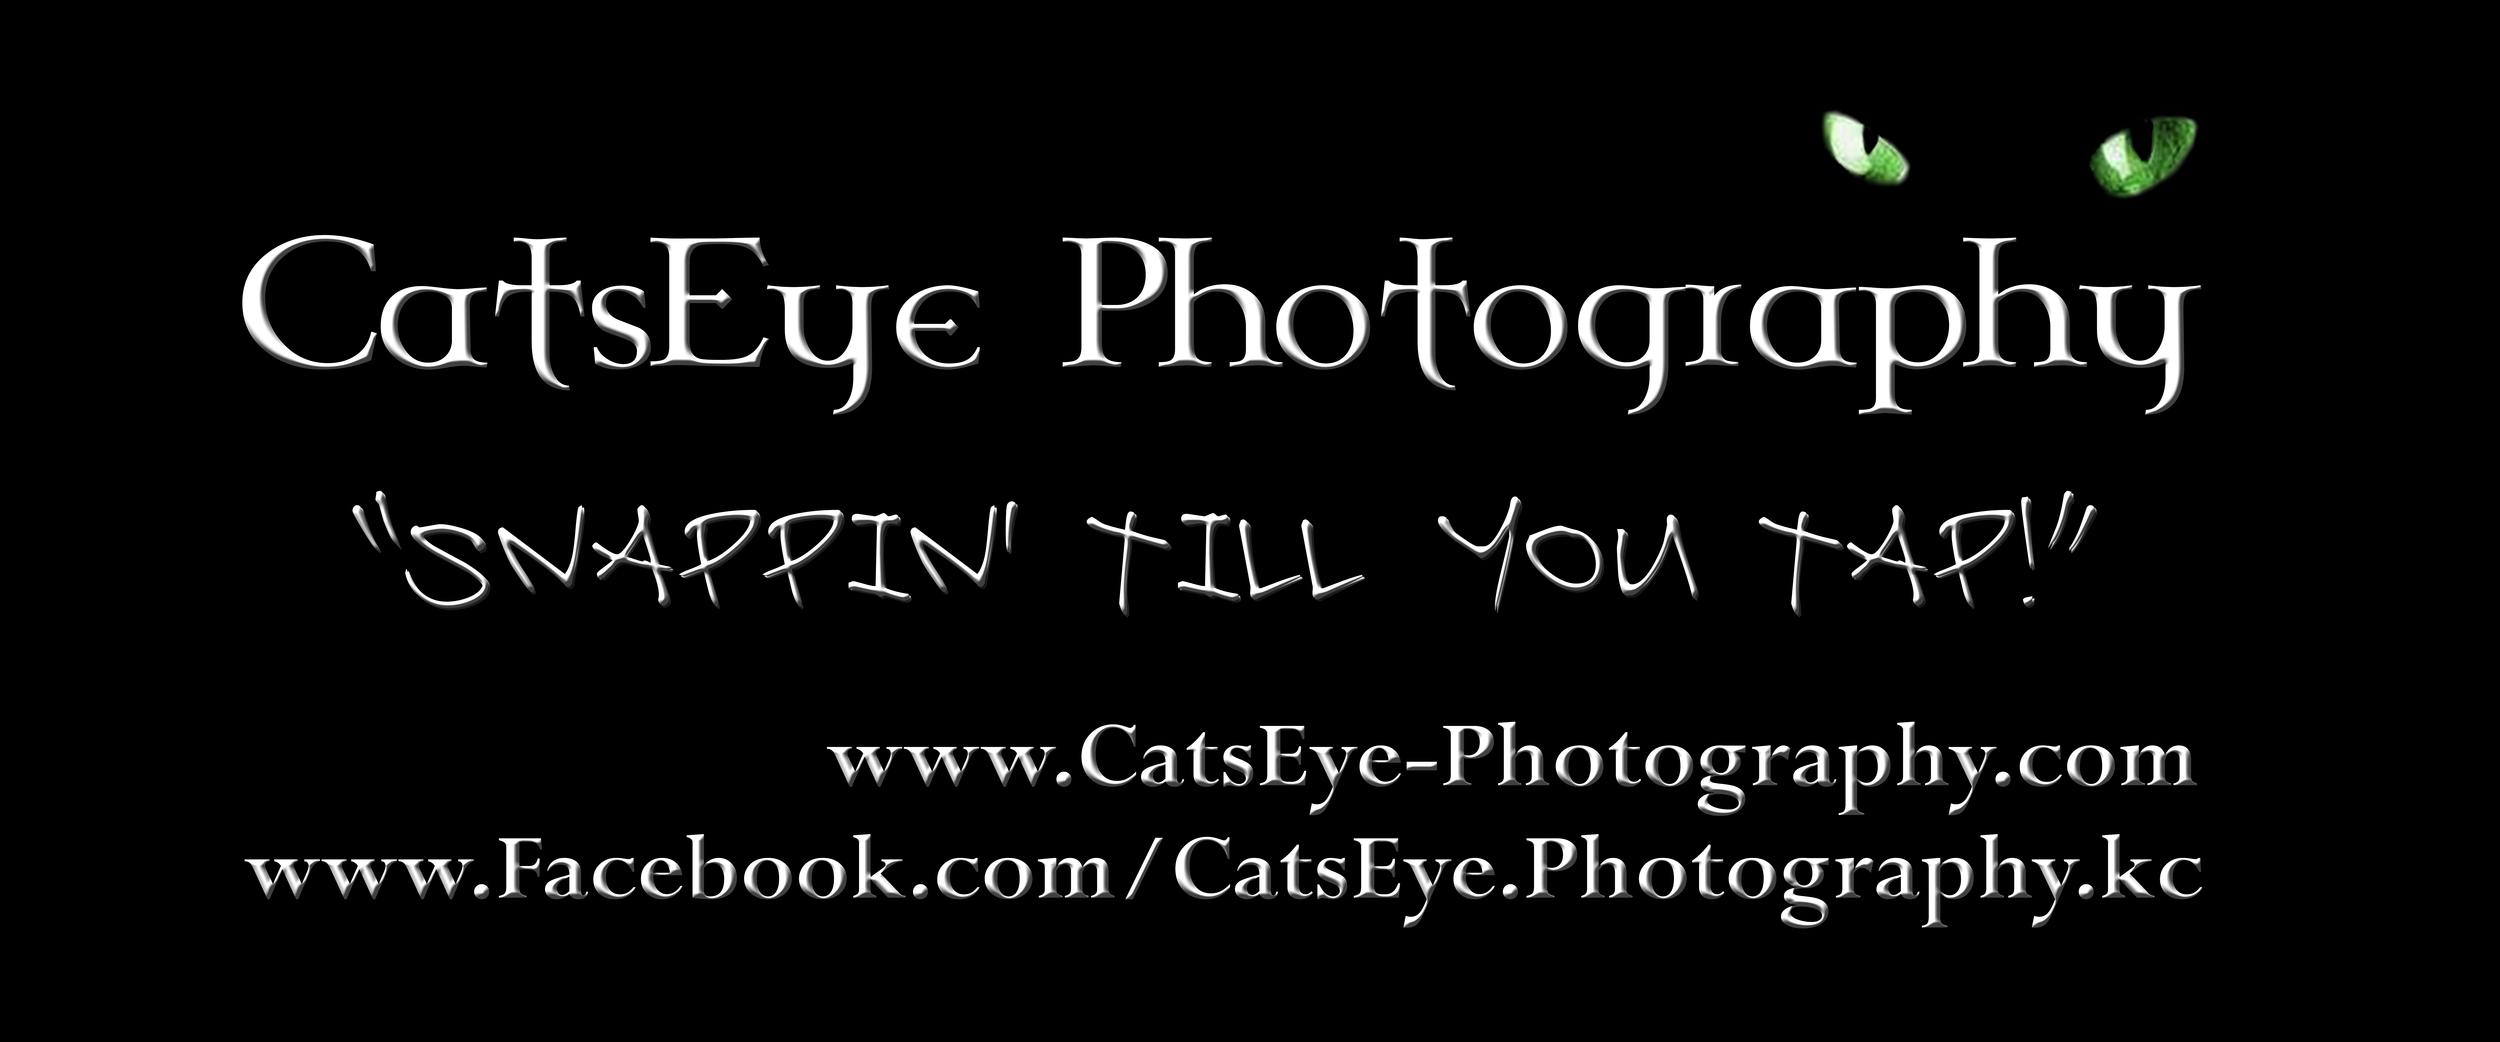 CatsEye Logo.jpg